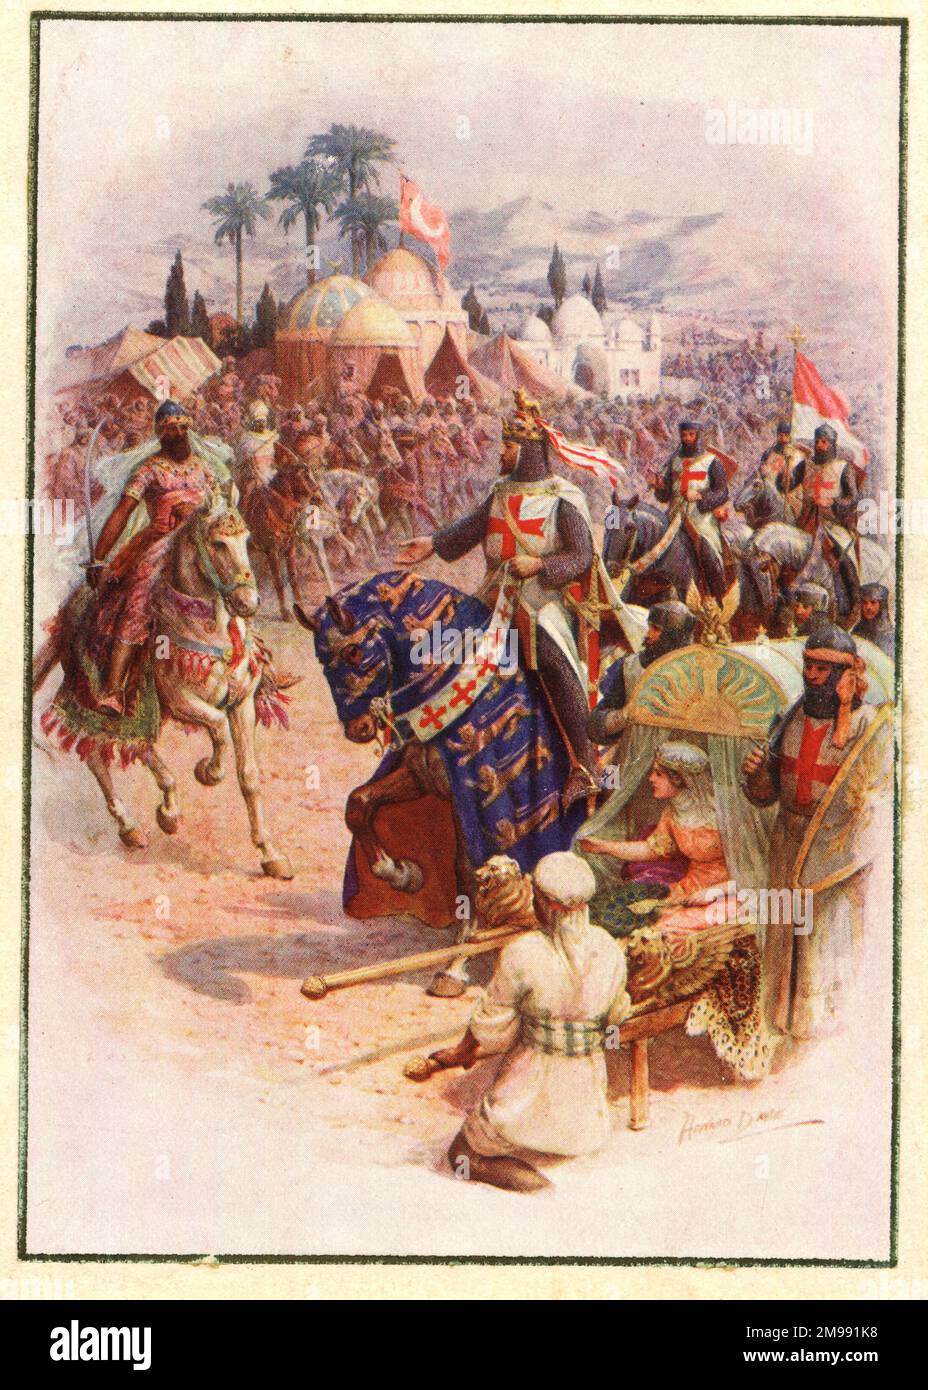 Incontro del re Riccardo i (il cuore di Leone) con Saladino, durante la terza crociata. Foto Stock